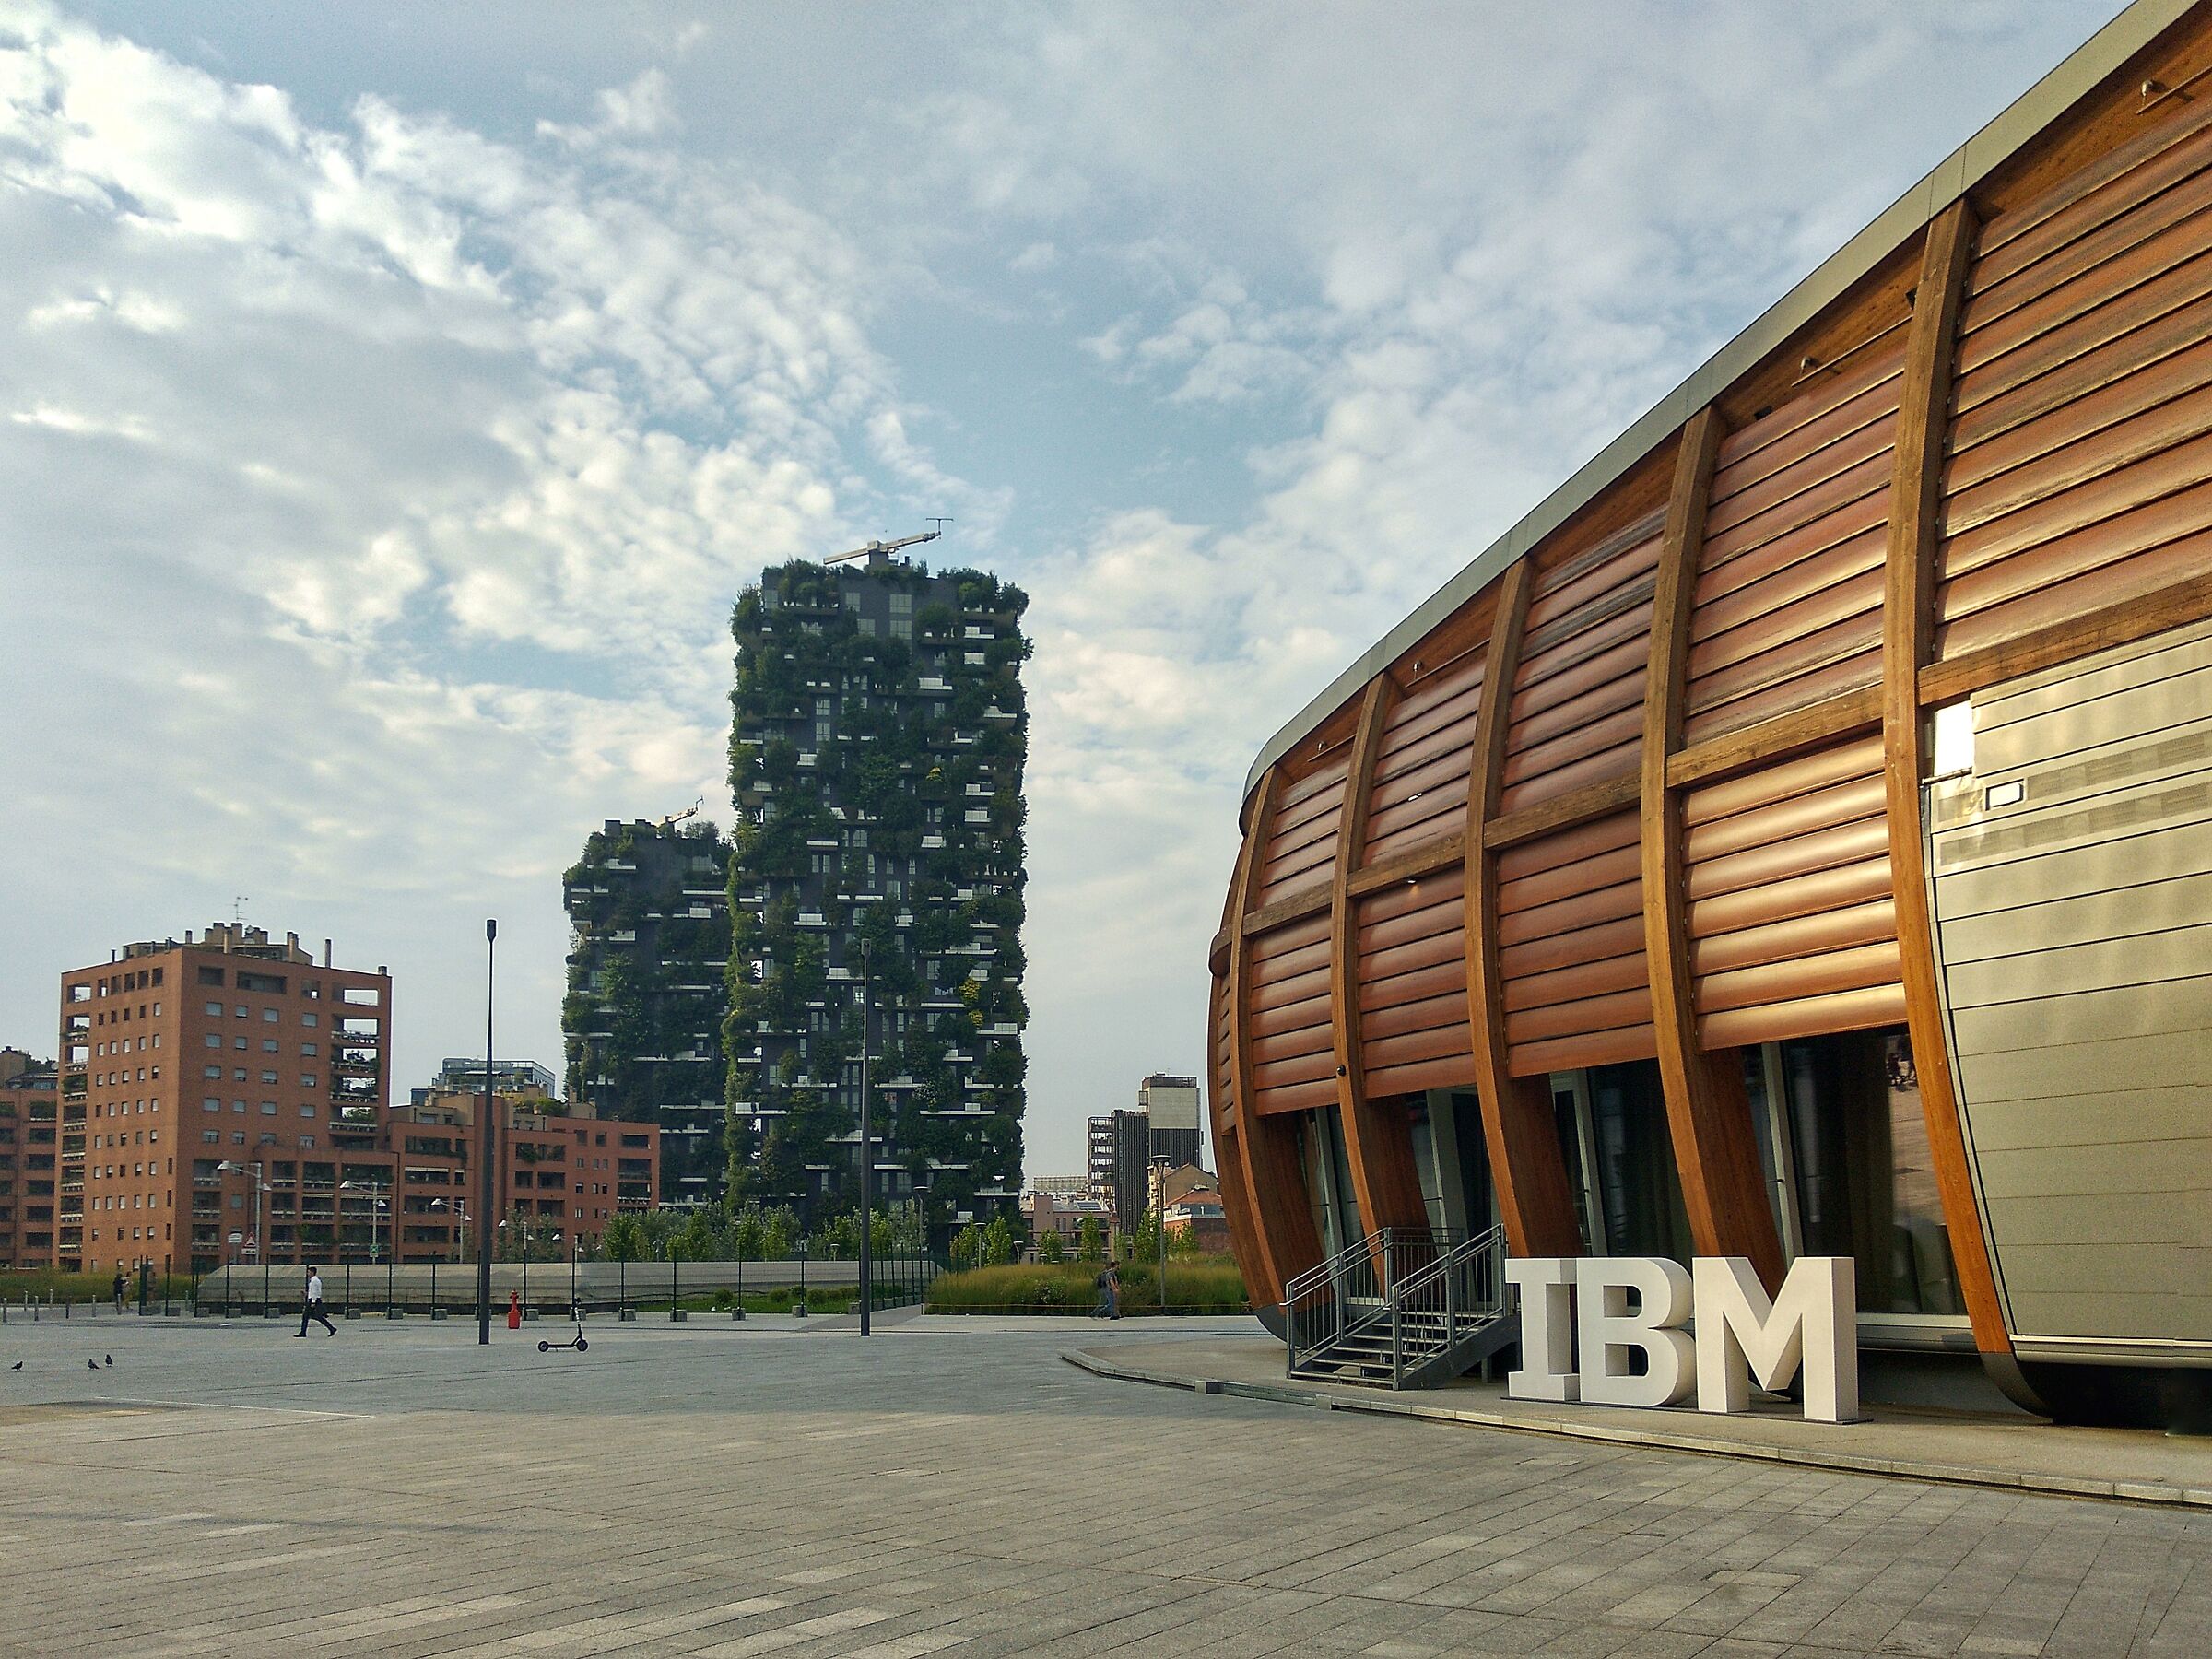 IBM studios and vertical garden...